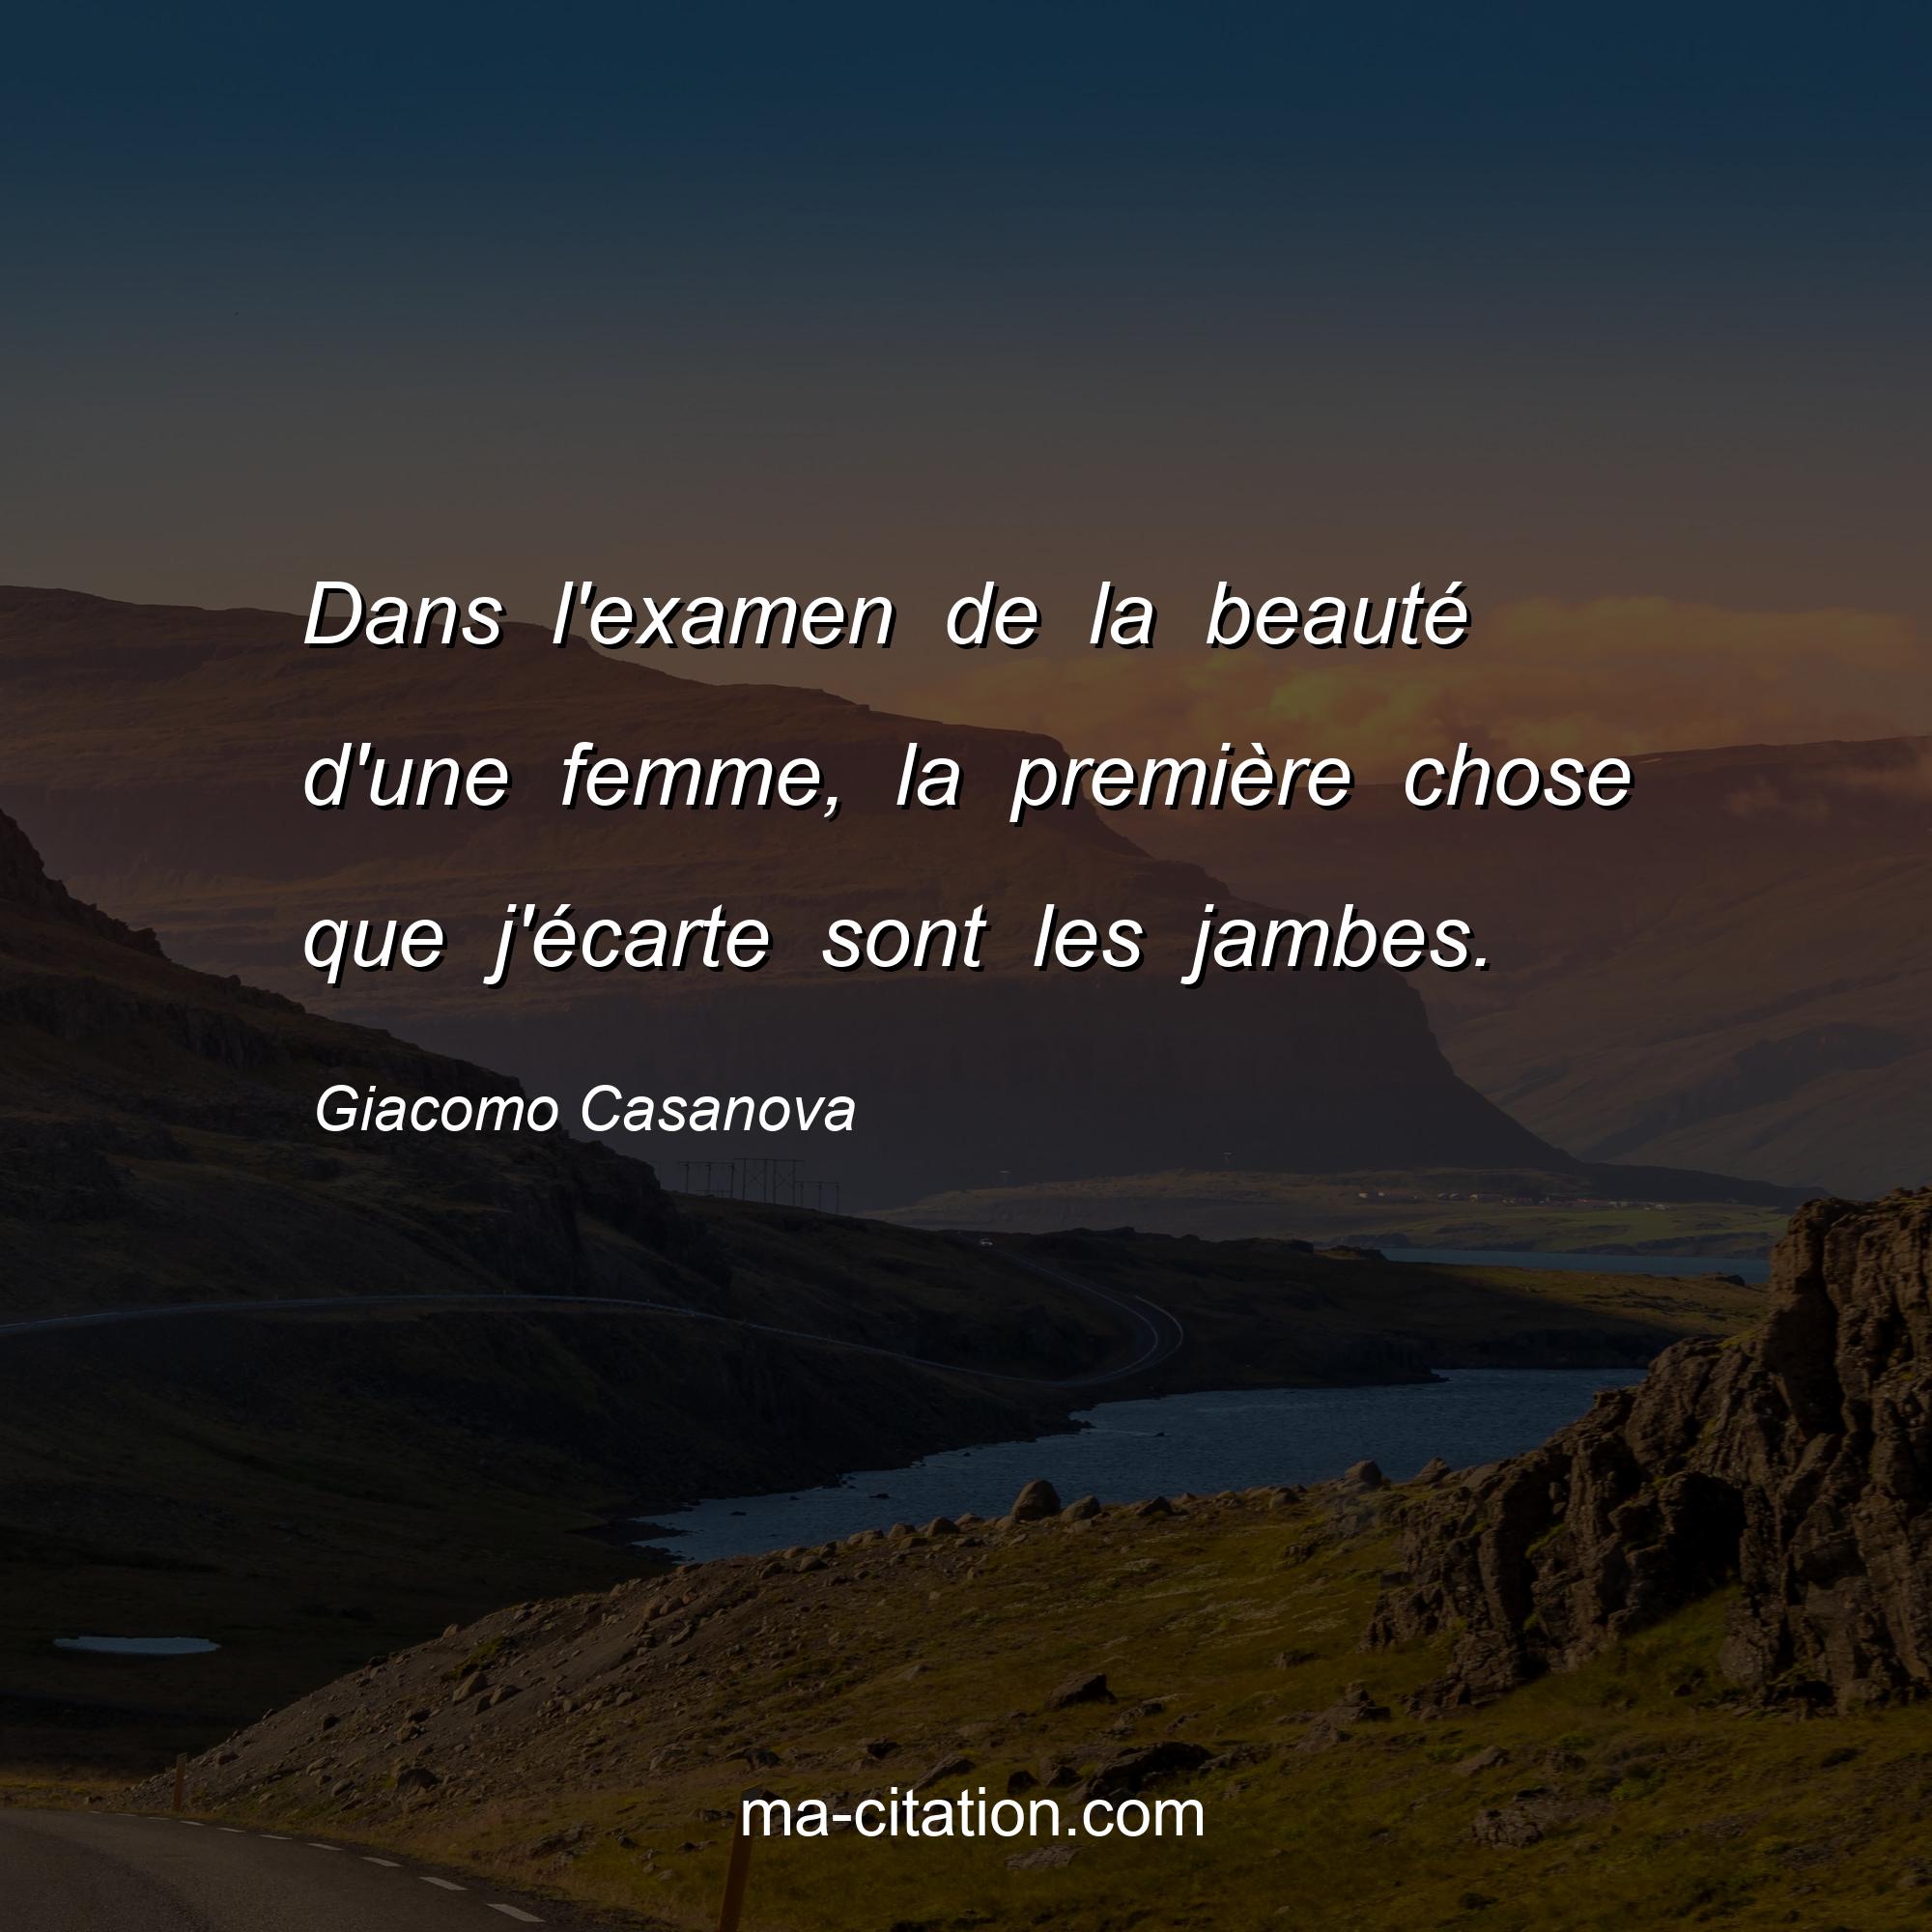 Giacomo Casanova : Dans l'examen de la beauté d'une femme, la première chose que j'écarte sont les jambes.